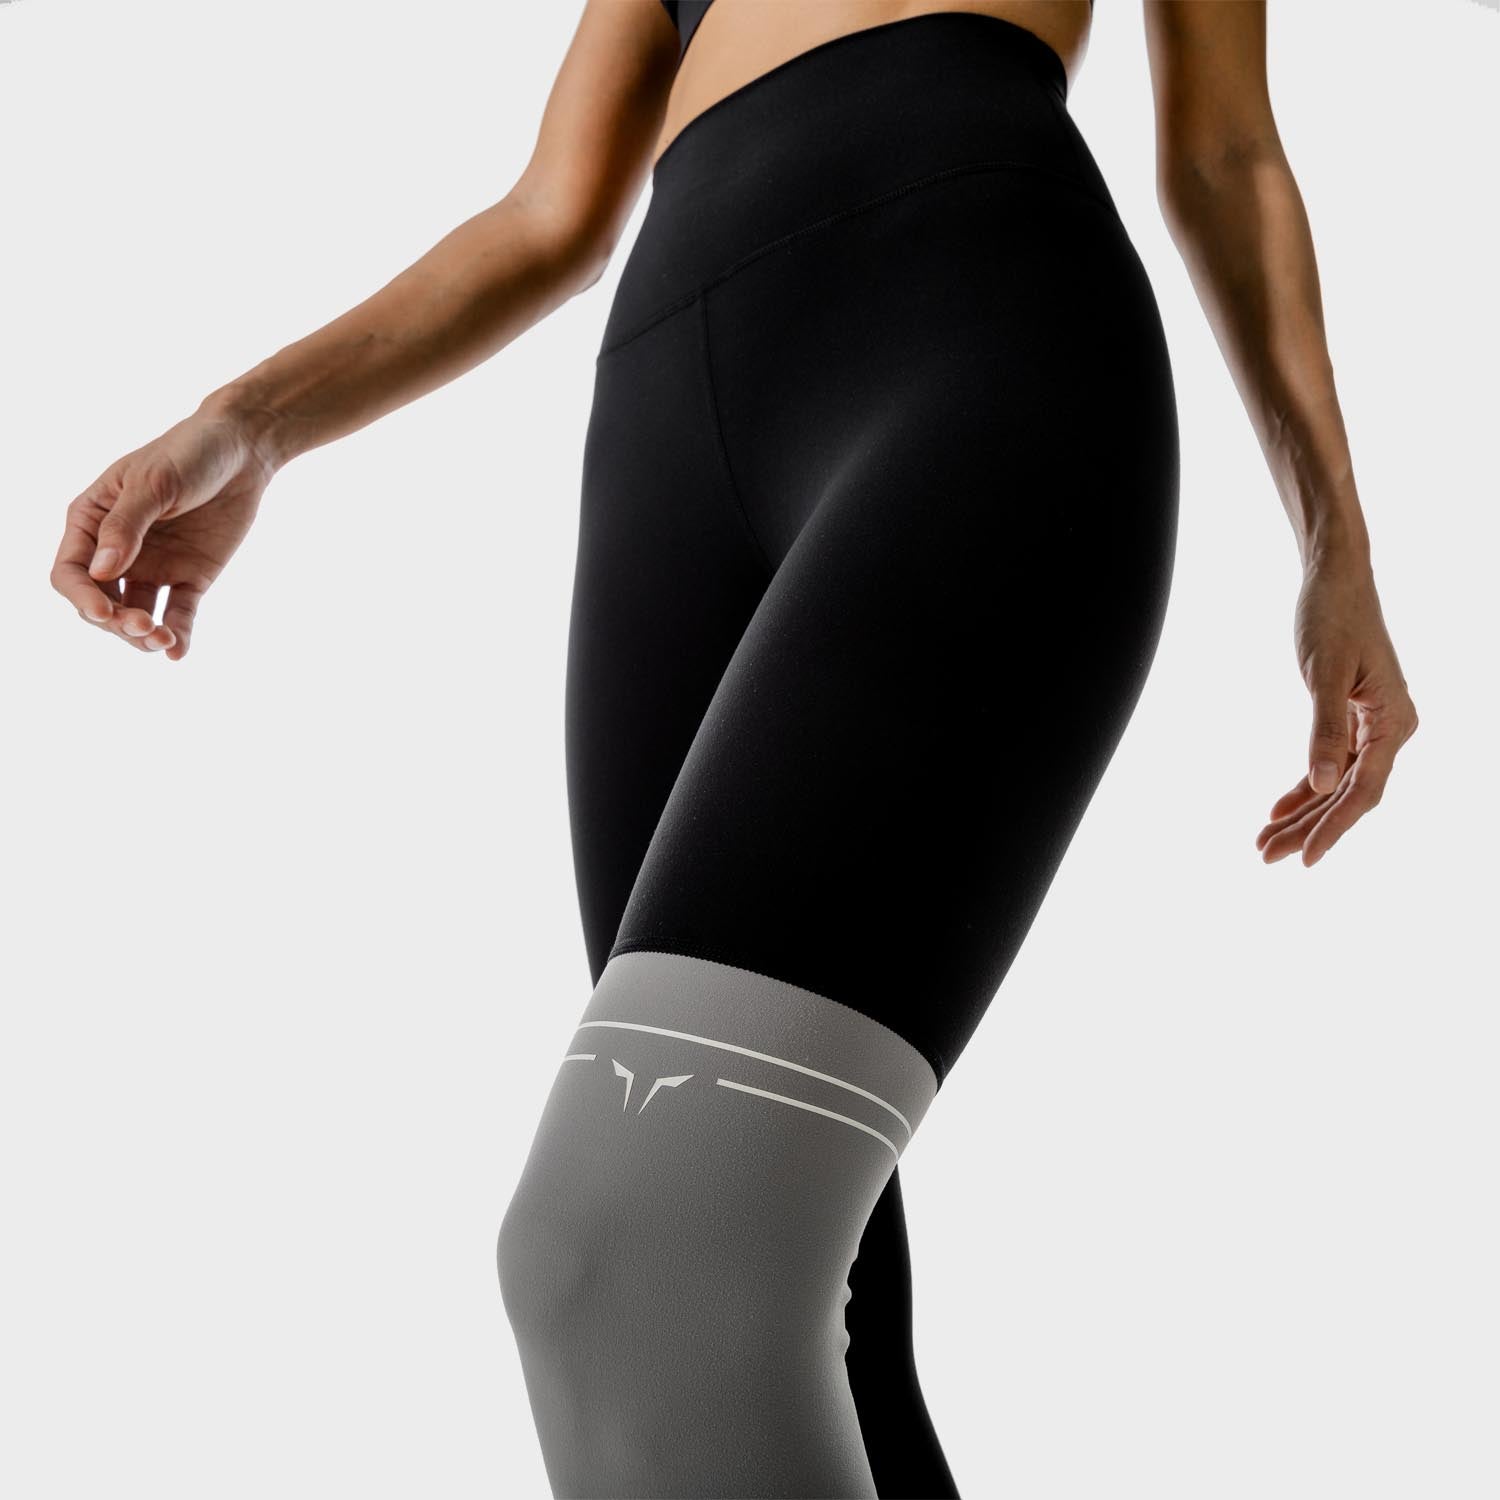 SQUATWOL-workout-clothes-lab-360-colour-block-leggings-black-gym-leggings-for-women